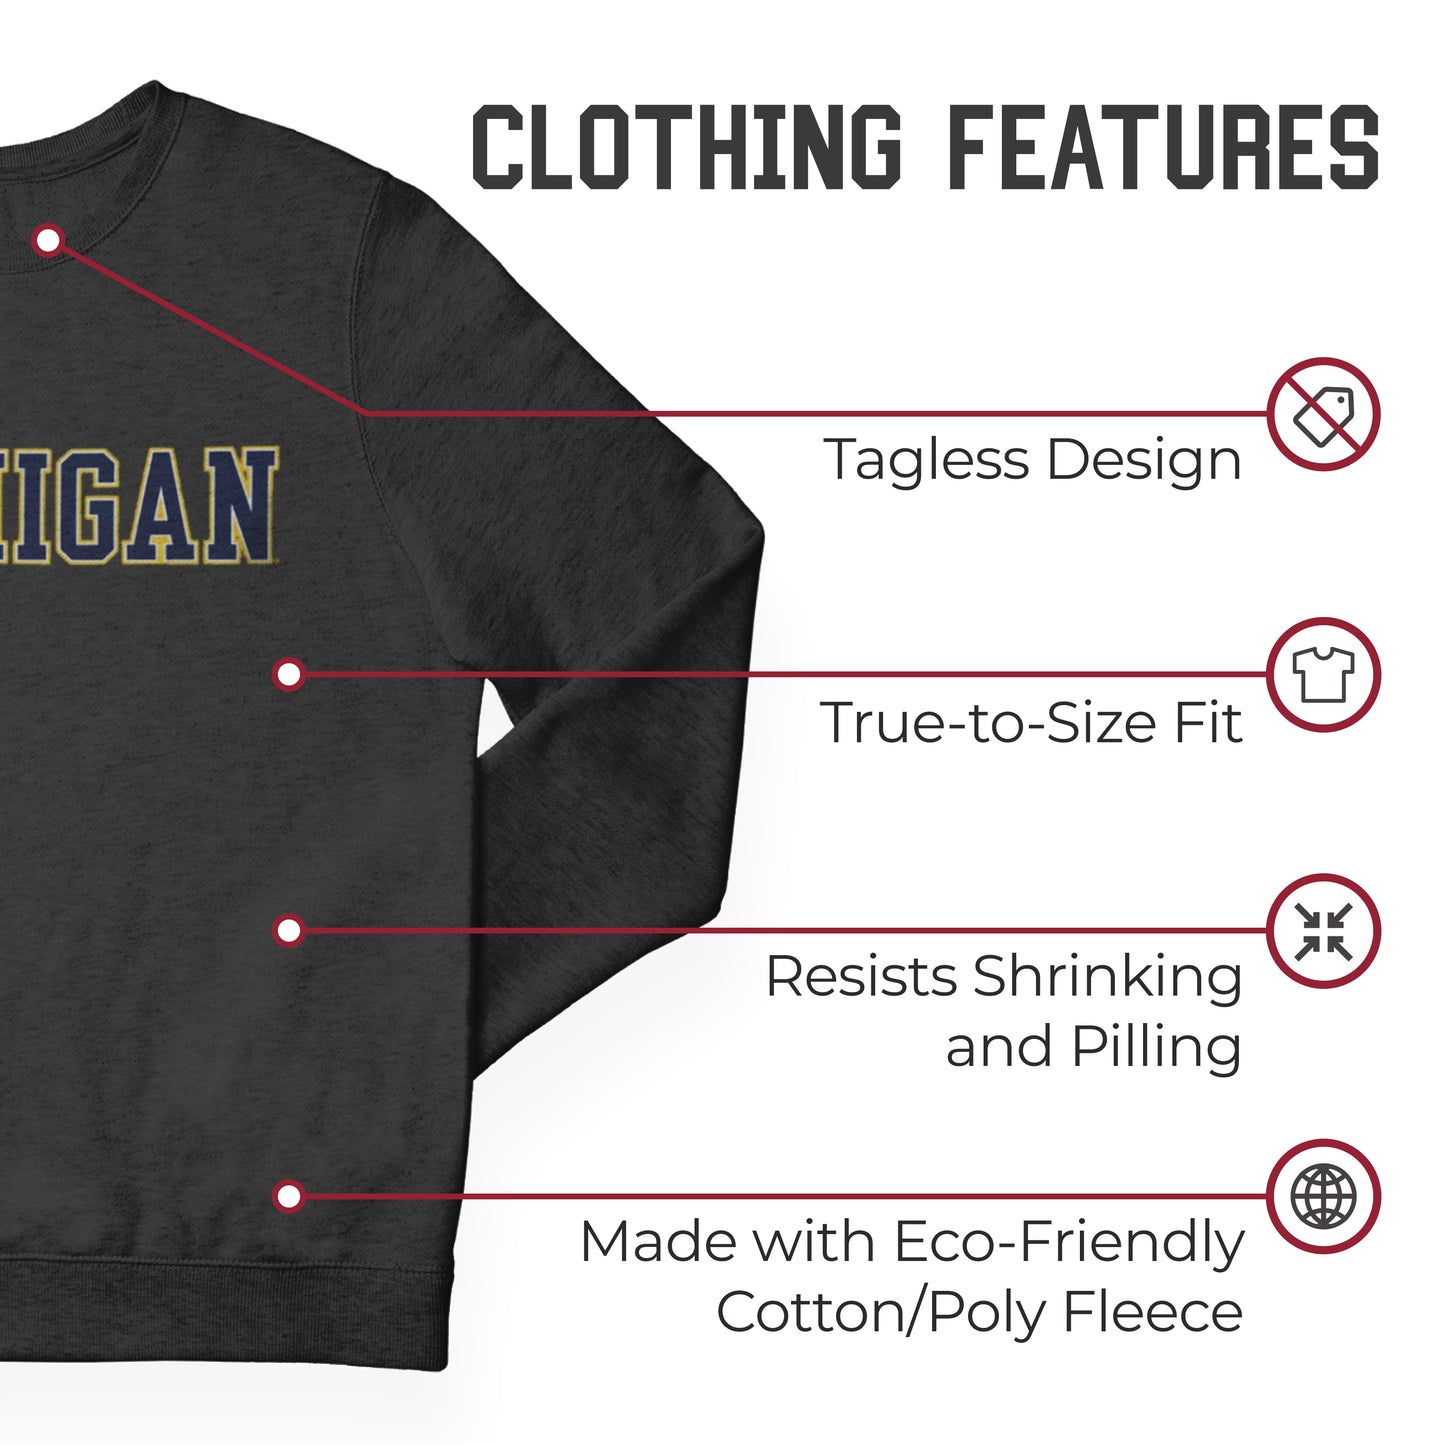 Michigan Wolverines NCAA Adult Charcoal Crewneck Fleece Sweatshirt - Charcoal